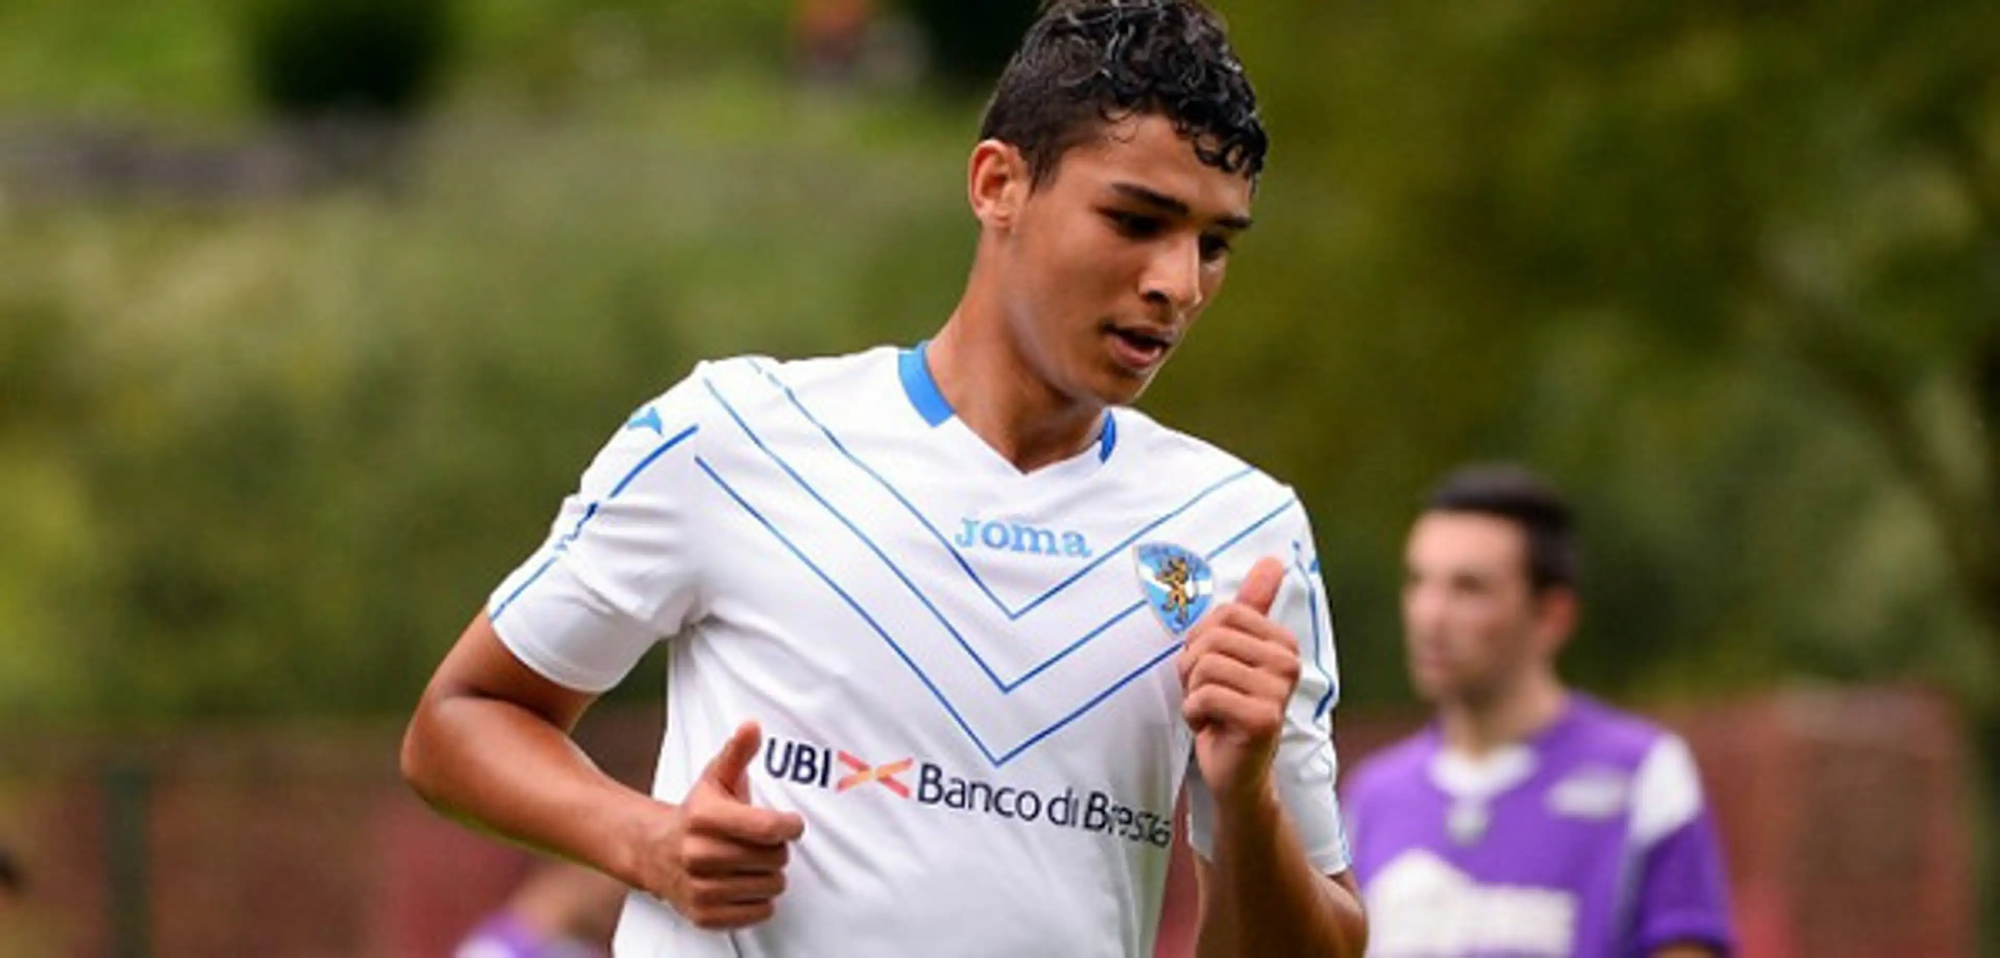 Đội bóng V-League thử việc cầu thủ từng gia nhập AS Roma với giá gần 80 tỷ đồng  - Ảnh 1.